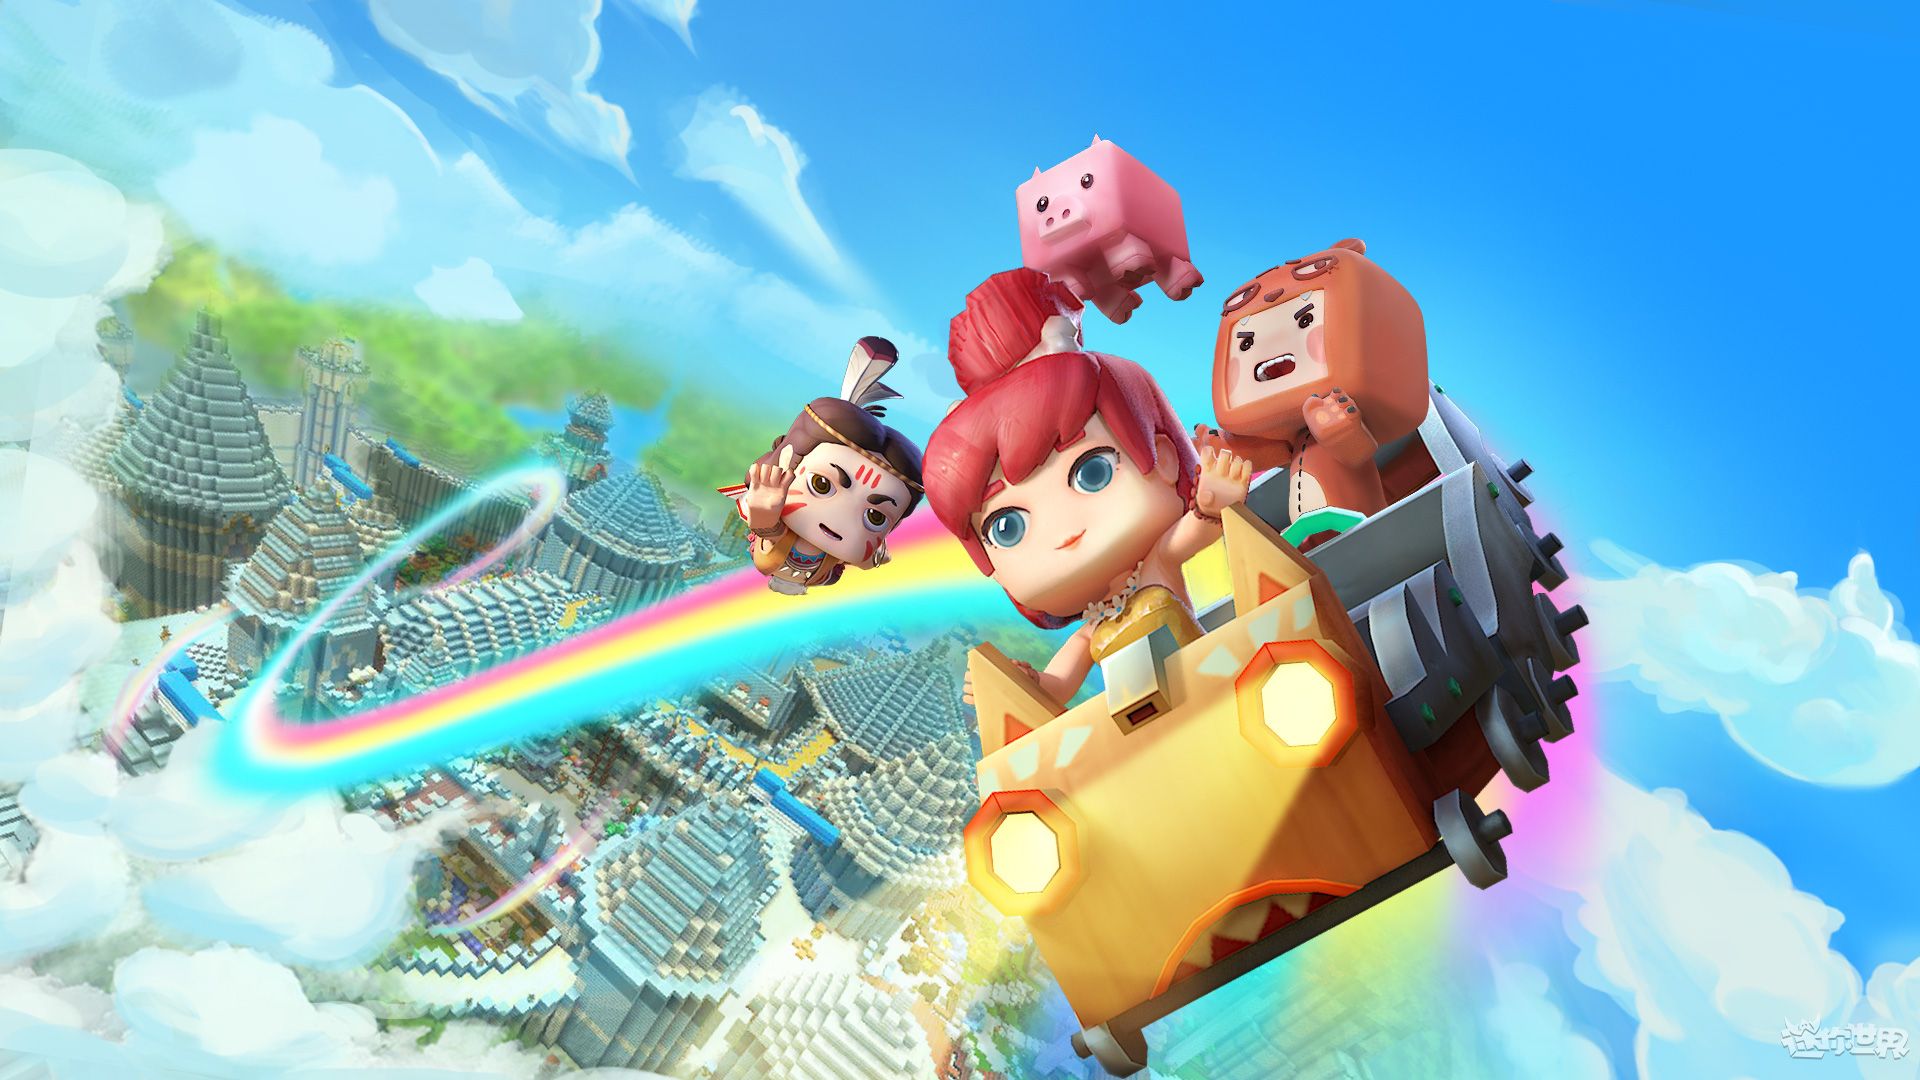 《迷你世界》最新壁纸:熊孩子们一起玩彩虹桥